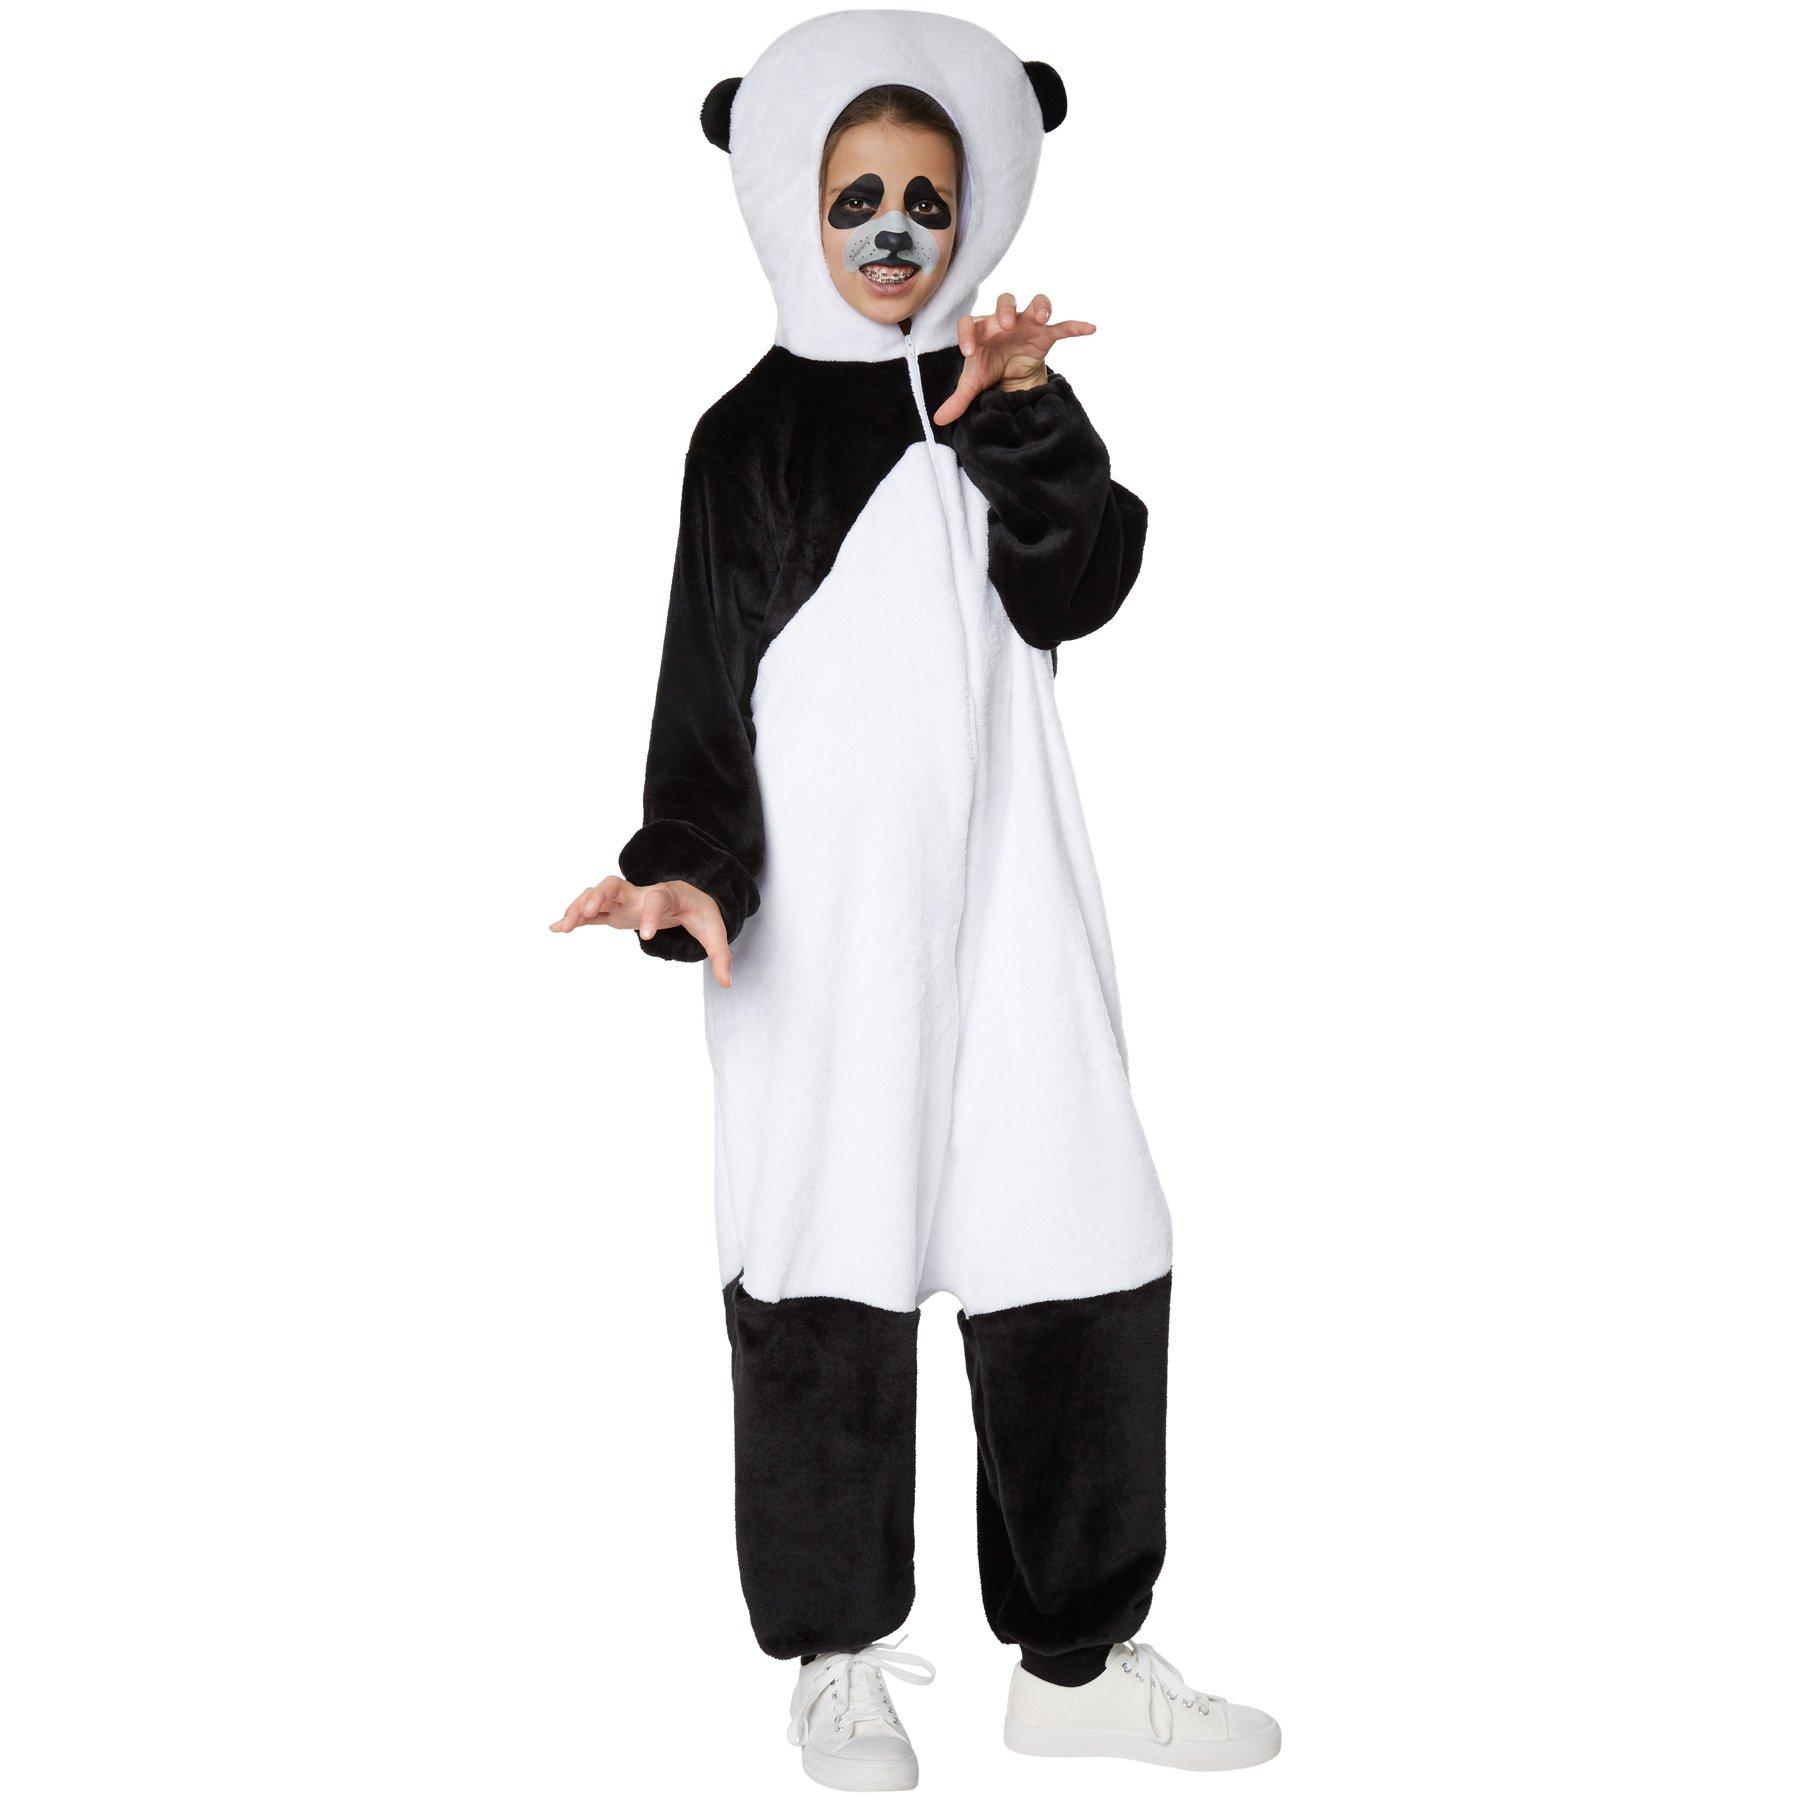 Tectake  Costume de panda pour enfants 